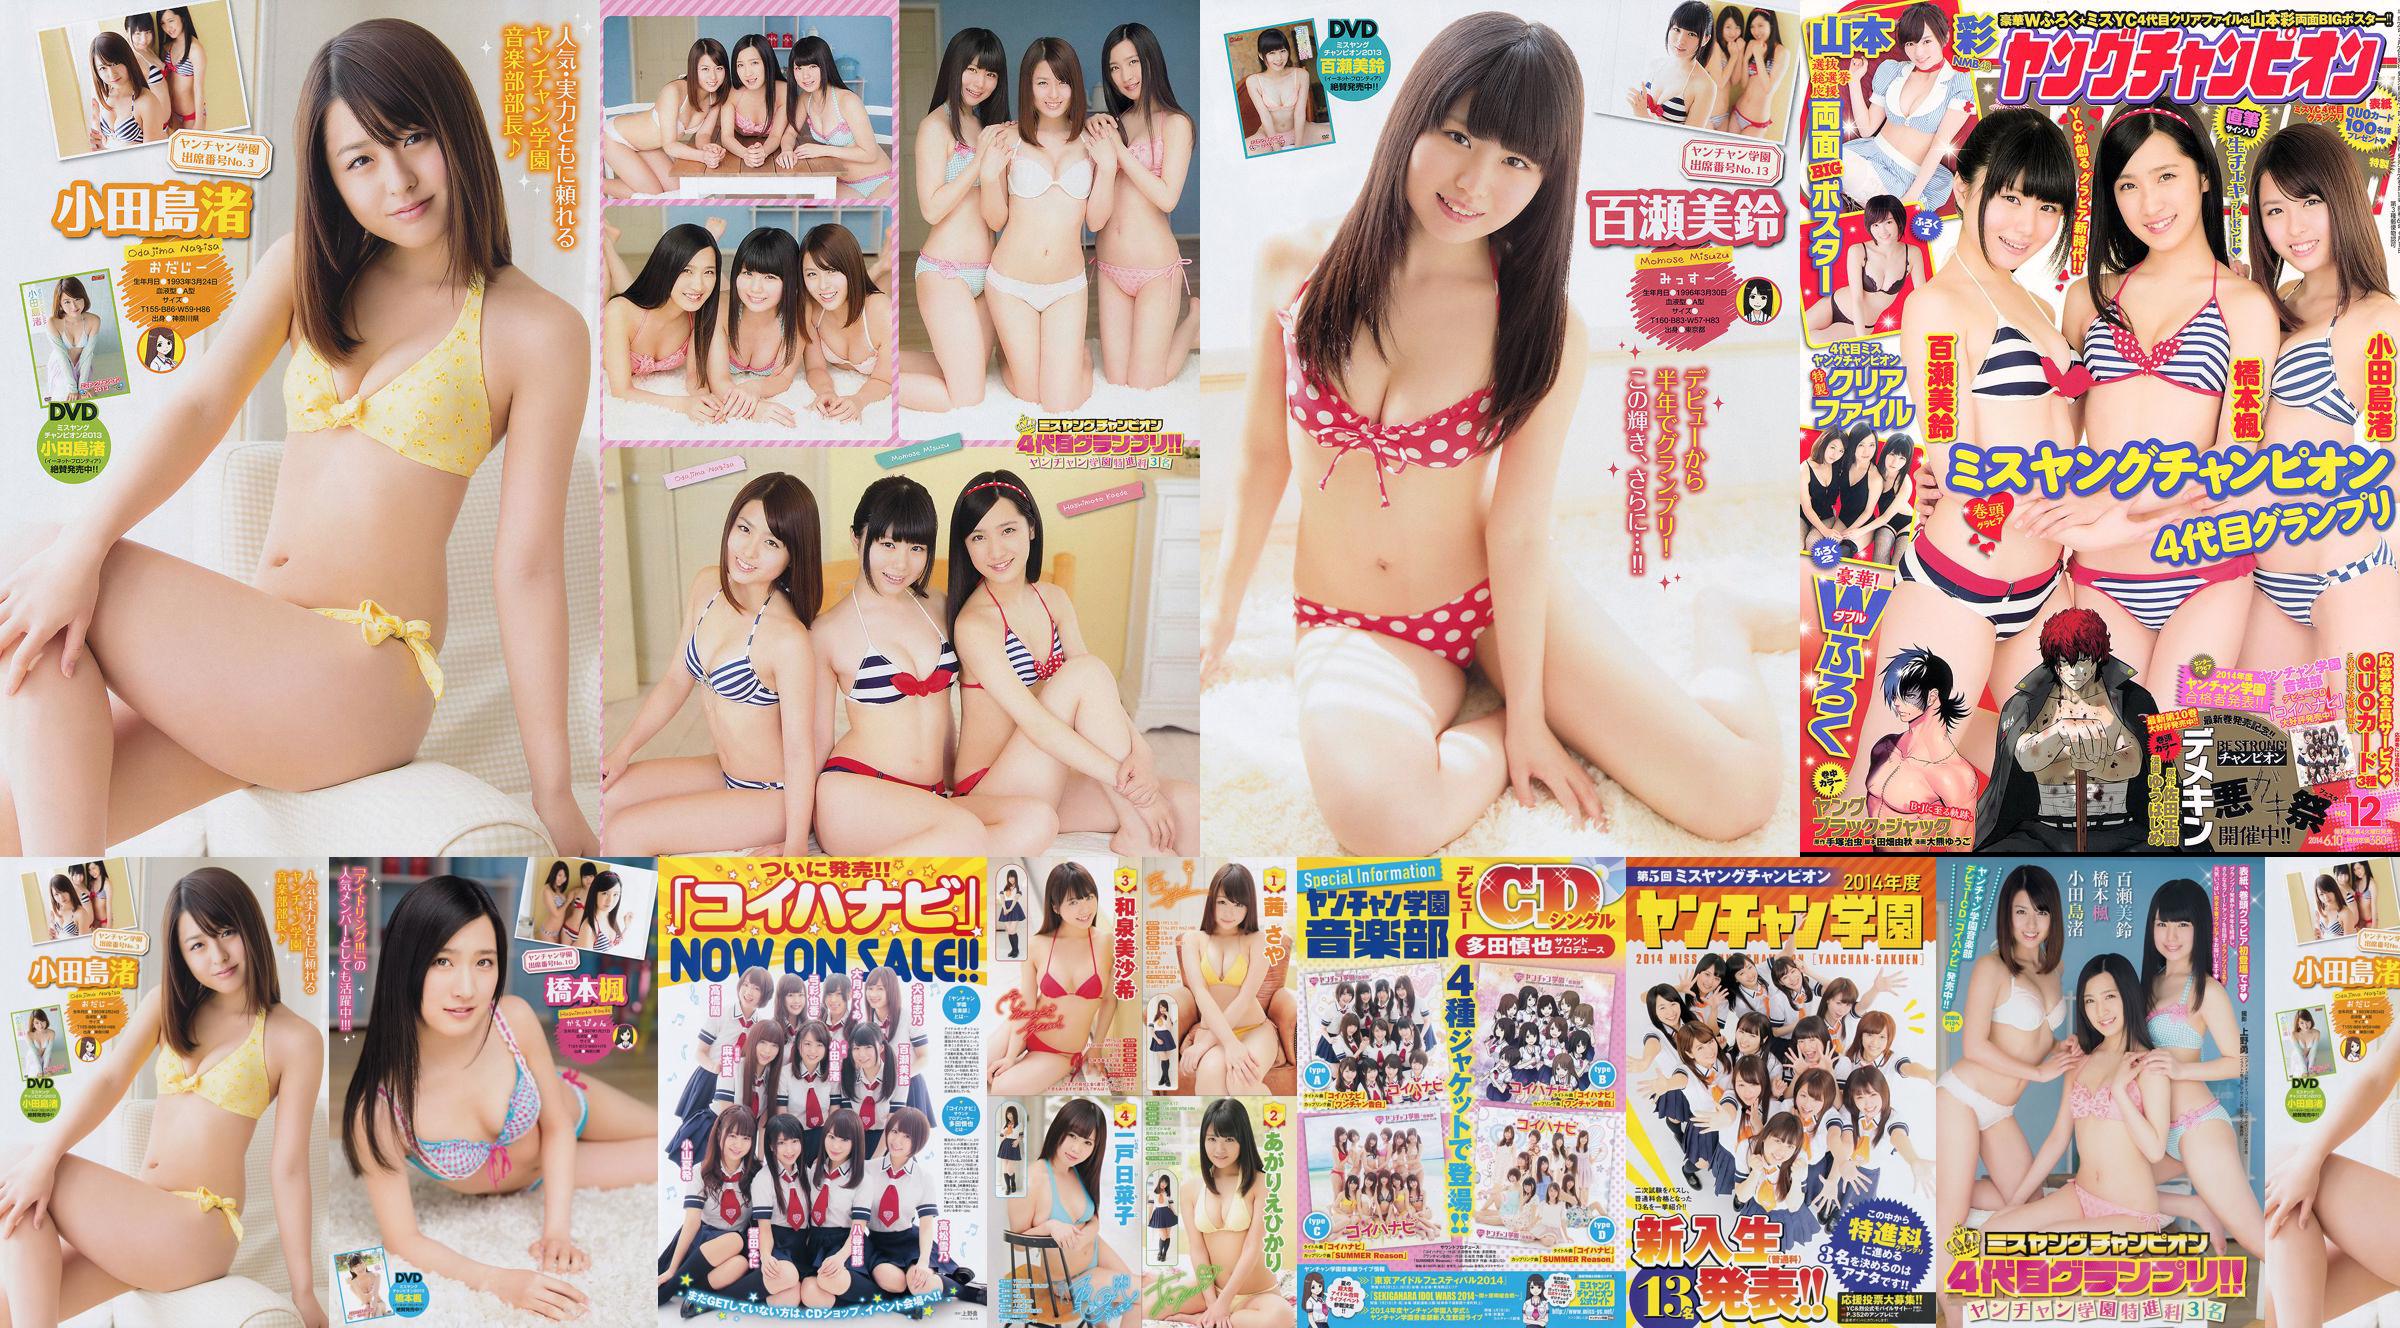 [Junger Champion] Nagisa Odajima Kaede Hashimoto Misuzu Momose 2014 Nr. 12 Foto No.c409e2 Seite 2